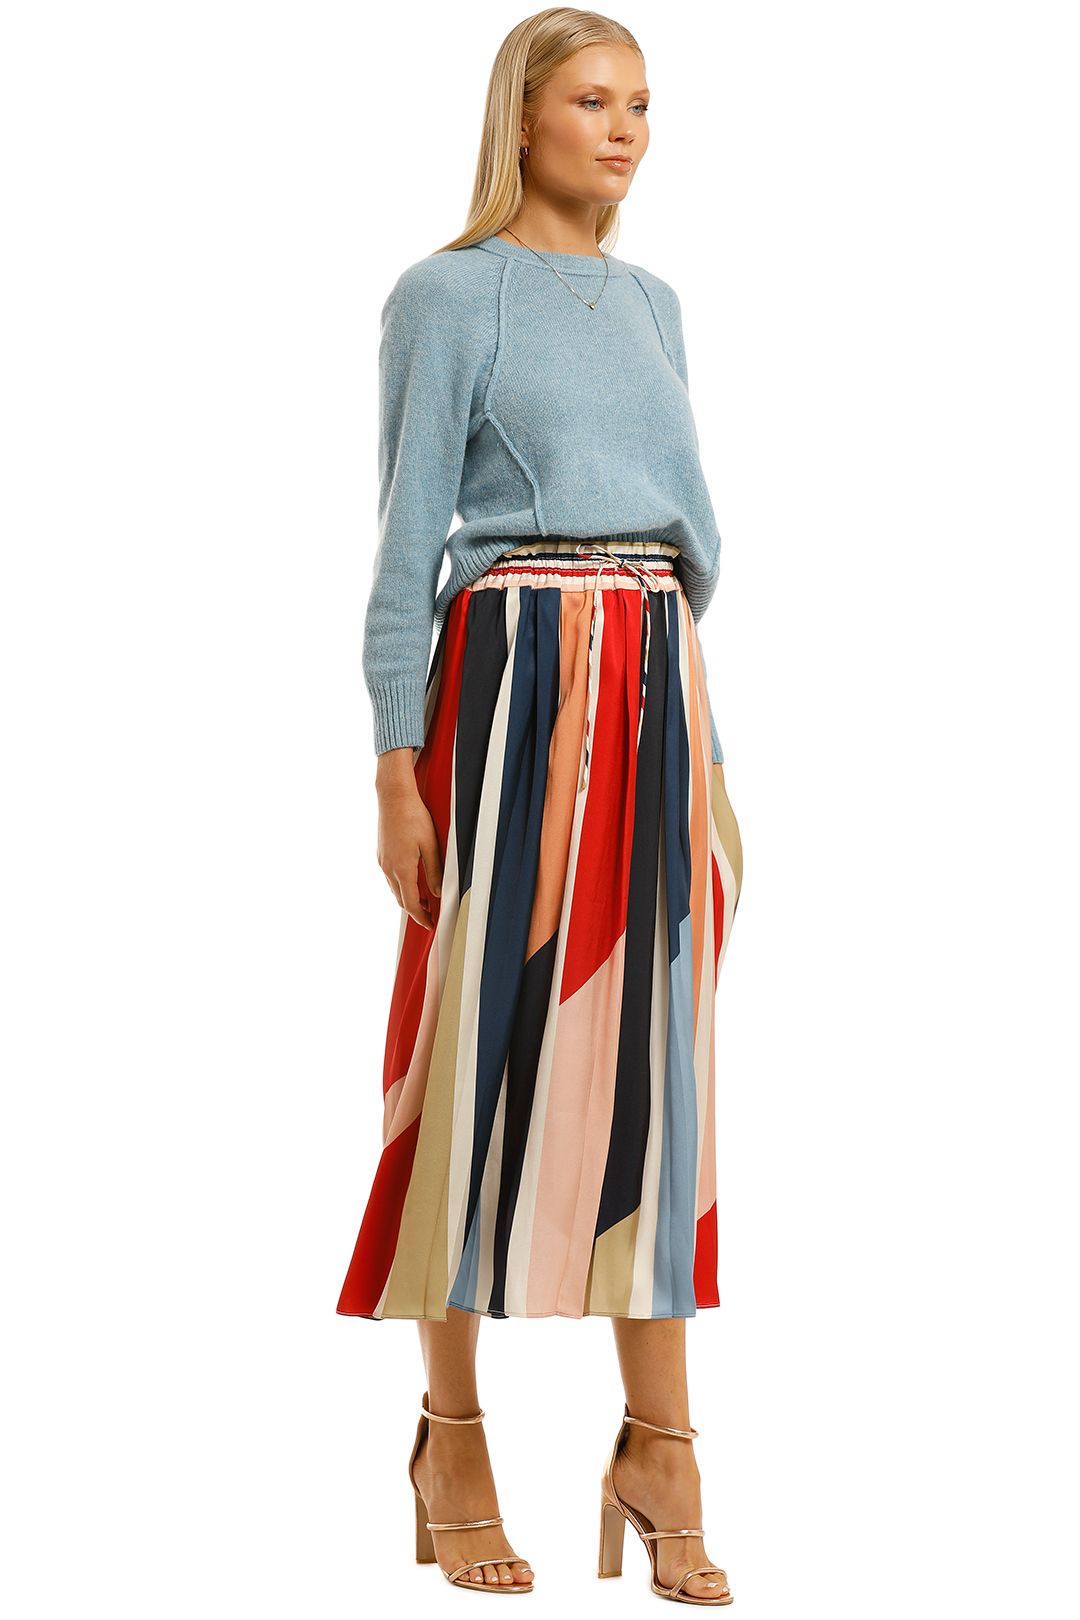 Cooper-St-Charlie-Pleated-Skirt-Print-Light-Side